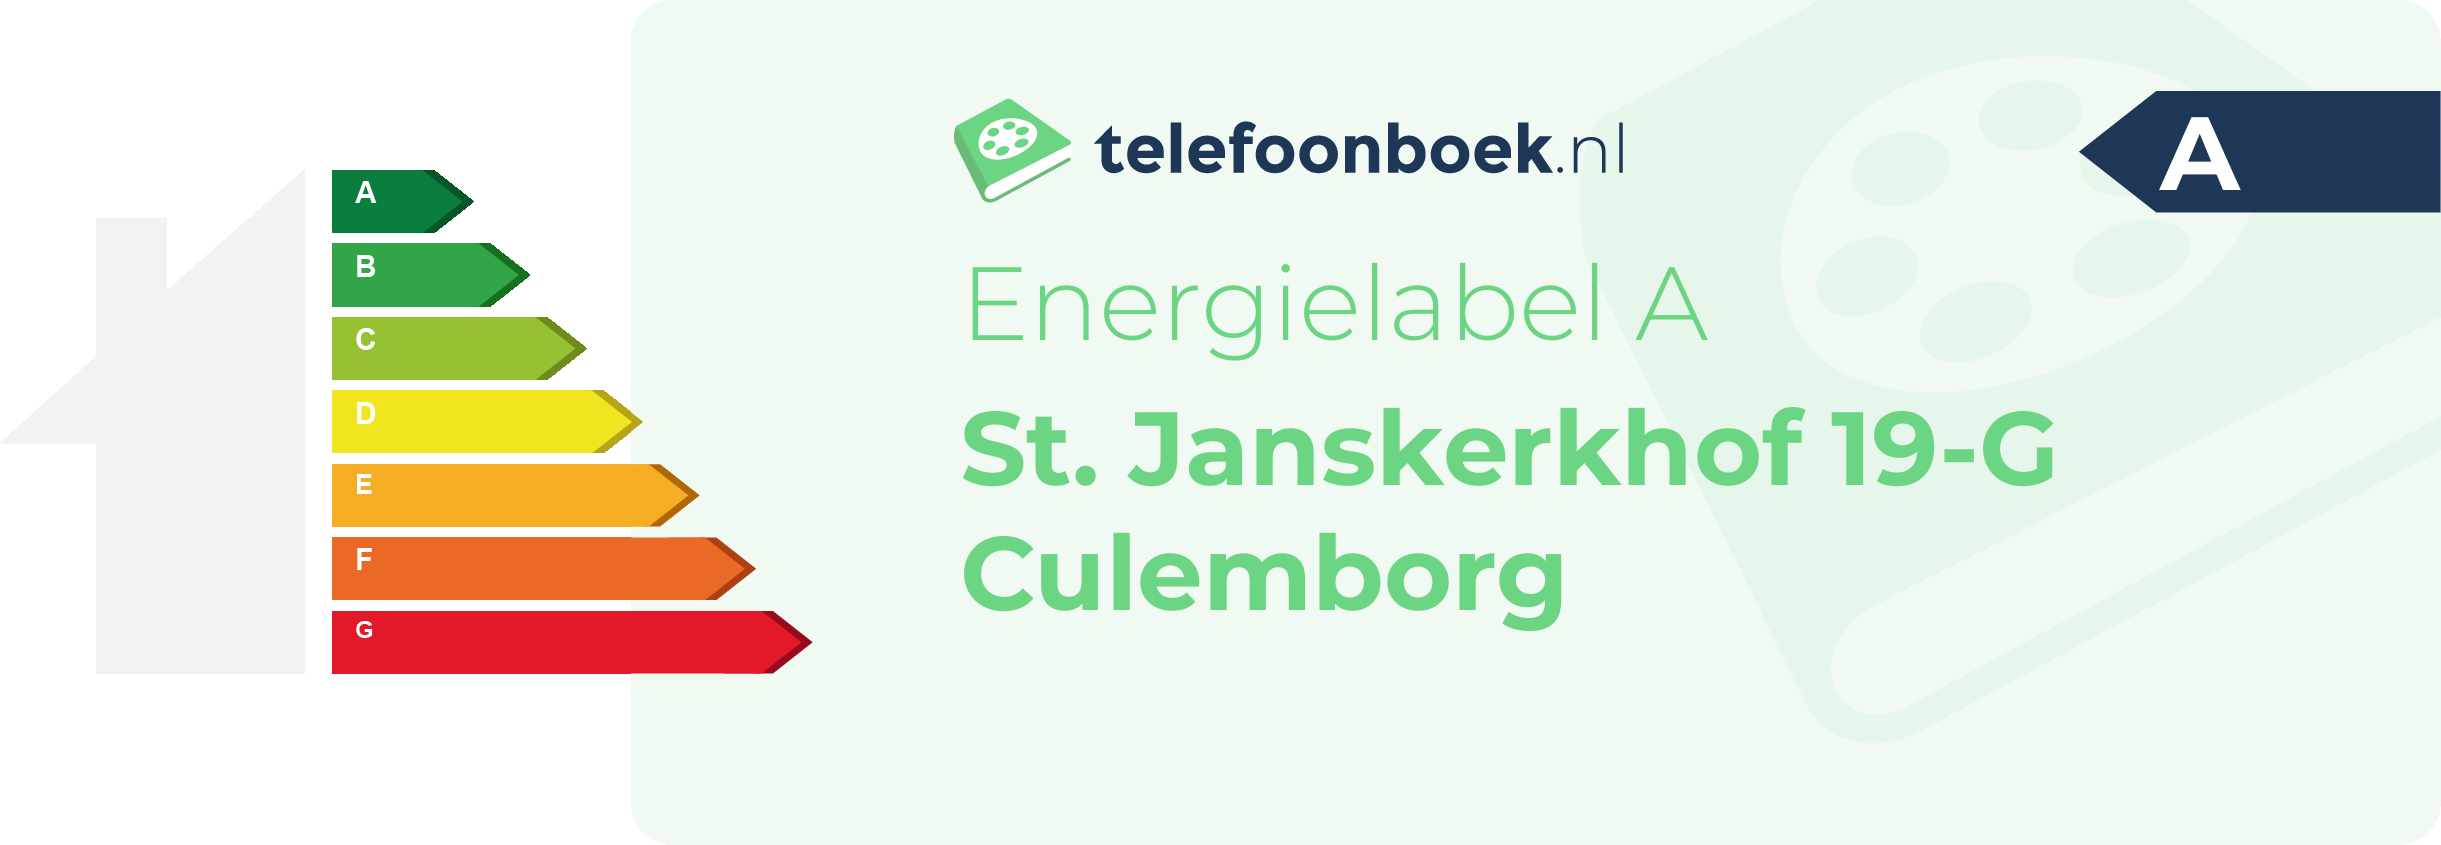 Energielabel St. Janskerkhof 19-G Culemborg